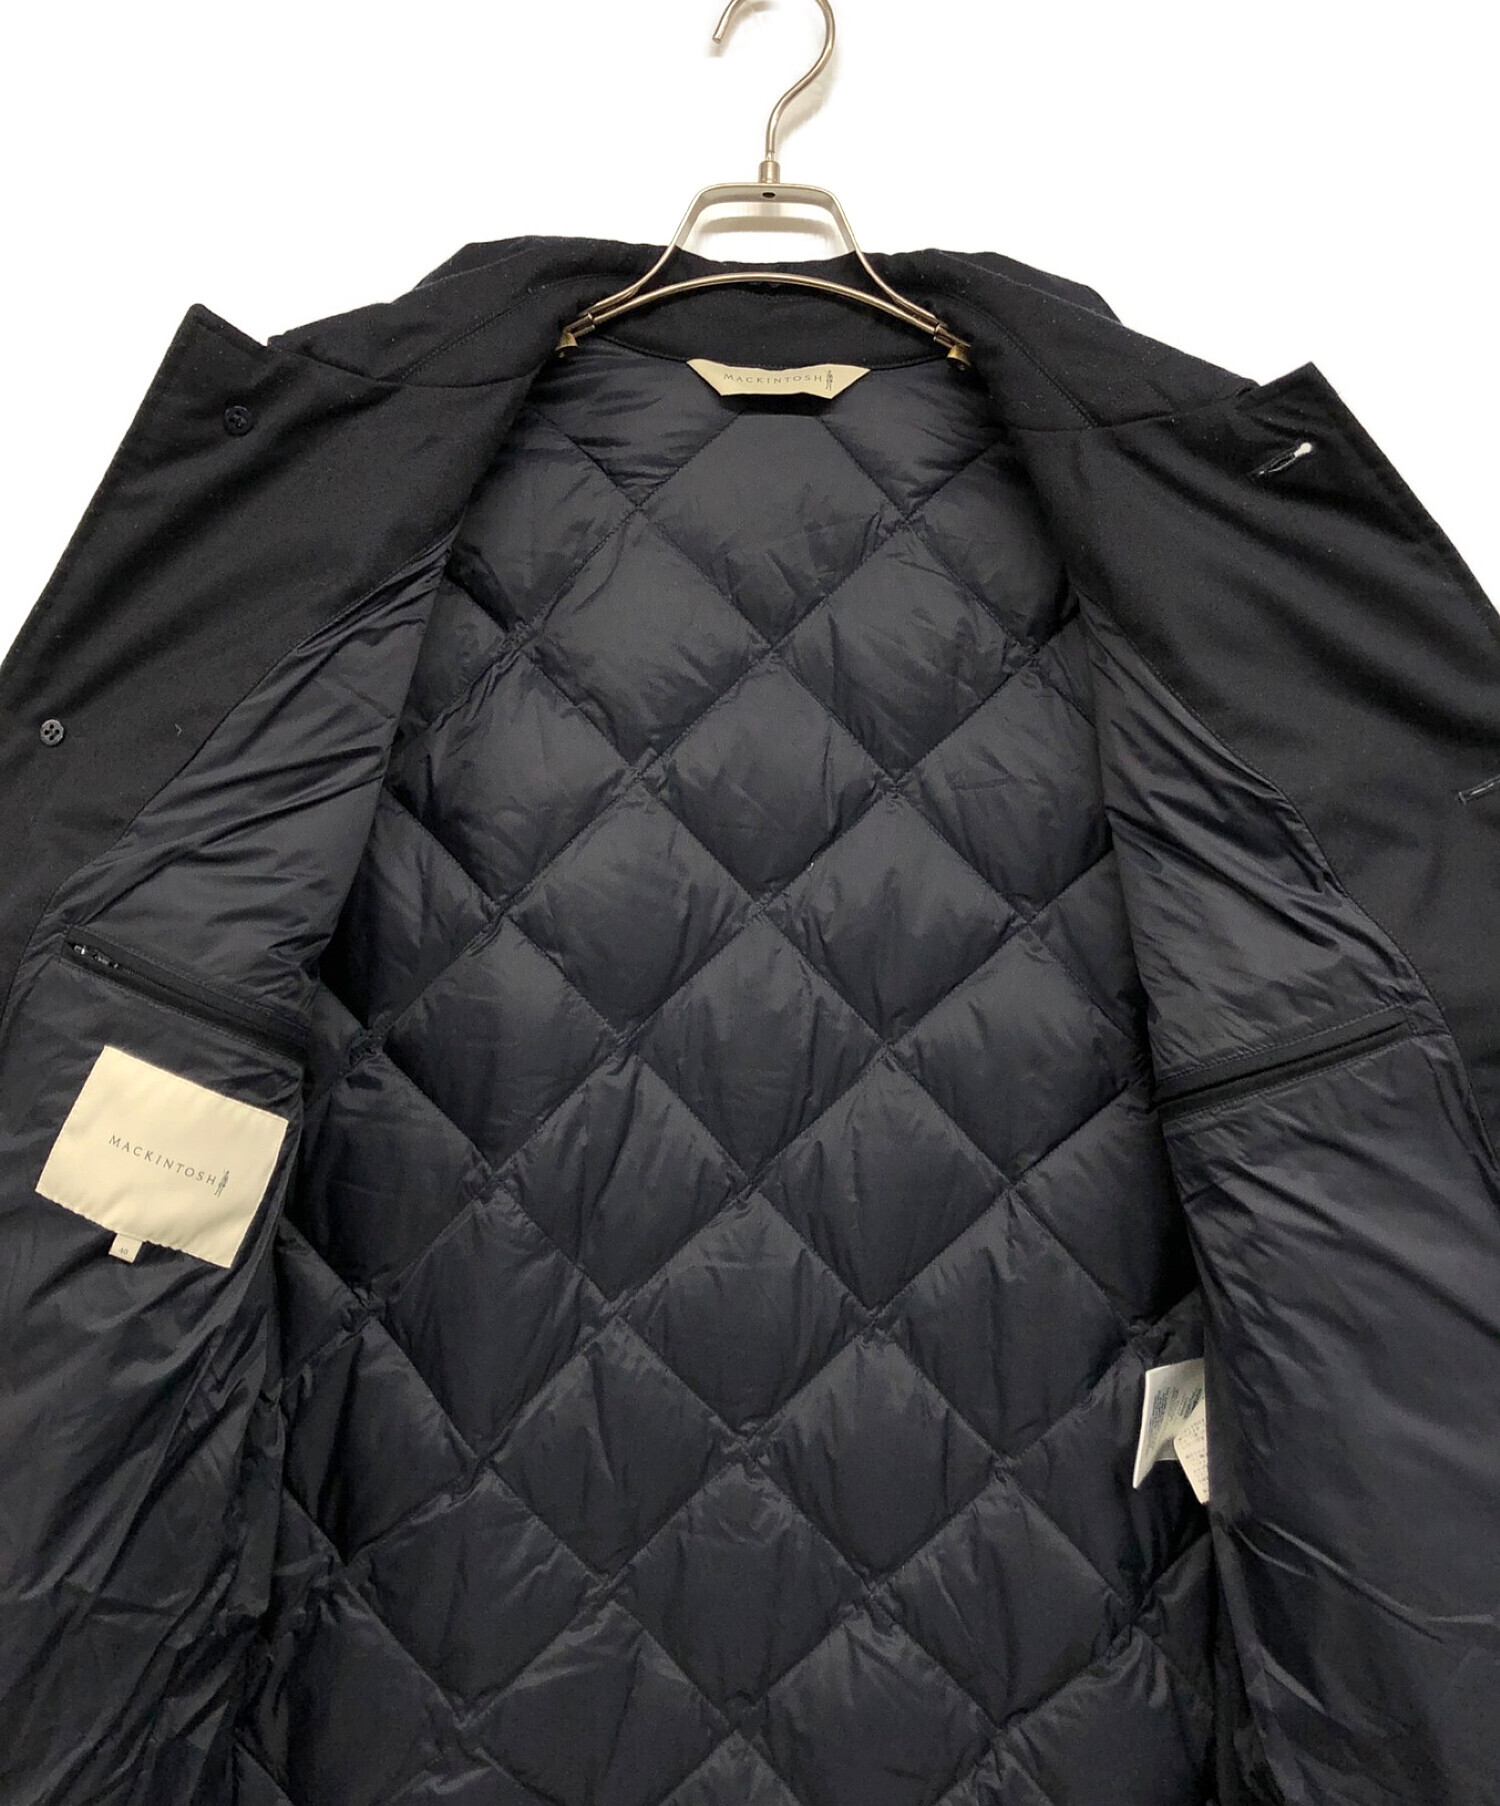 MACKINTOSH (マッキントッシュ) ウールキルティングジャケット ブラック サイズ:40